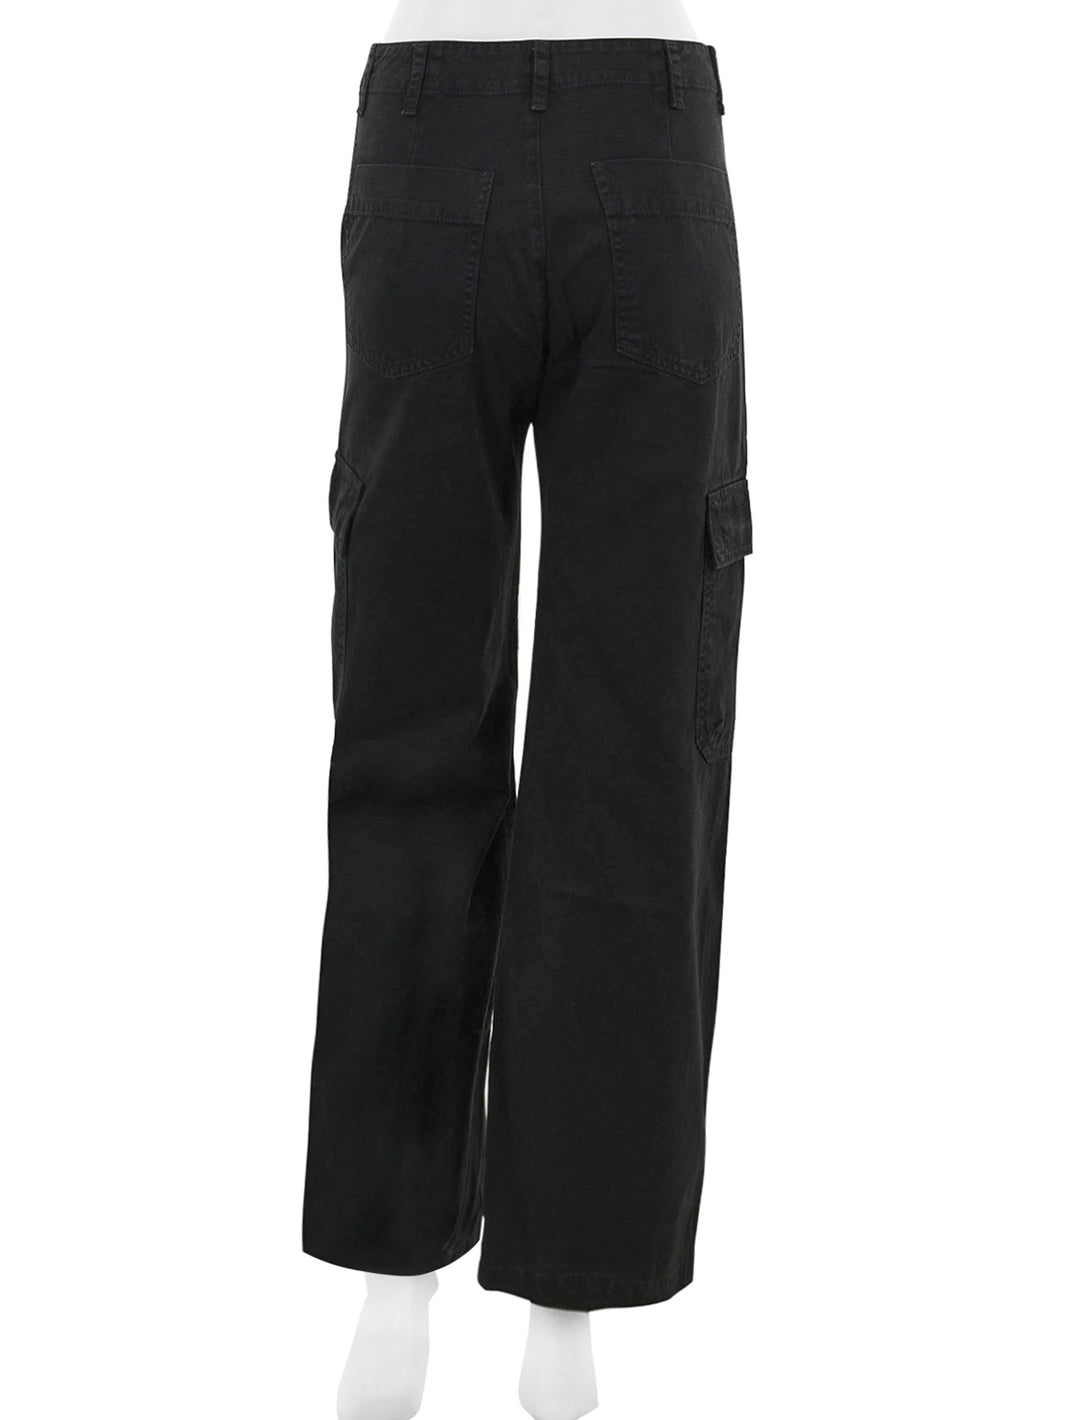 Back view of Velvet's makayla cargo pant in vintage black.